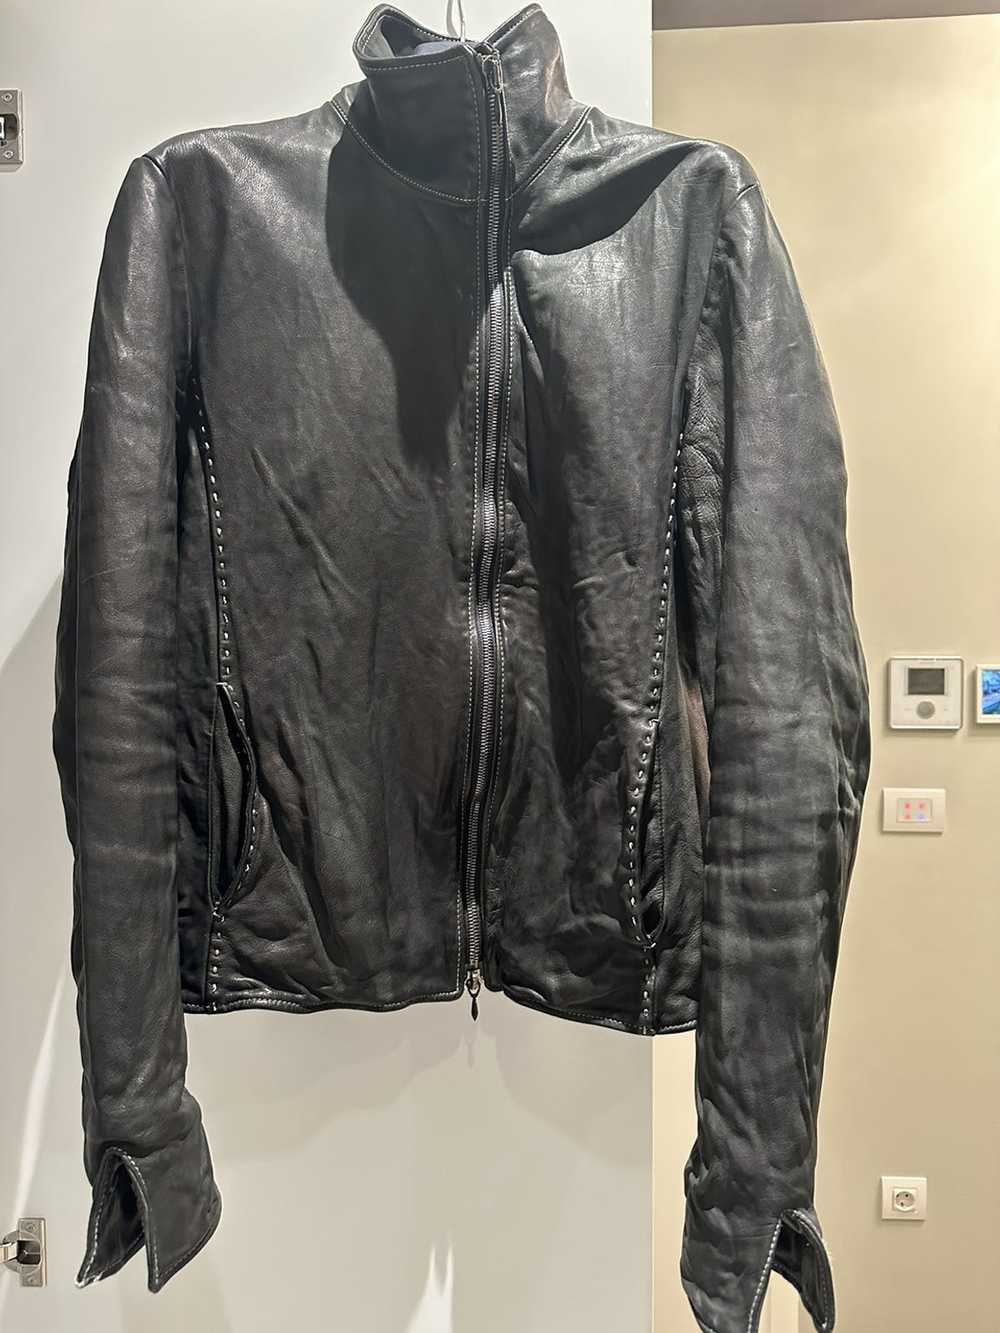 Incarnation Incarnation leather jacket - image 2